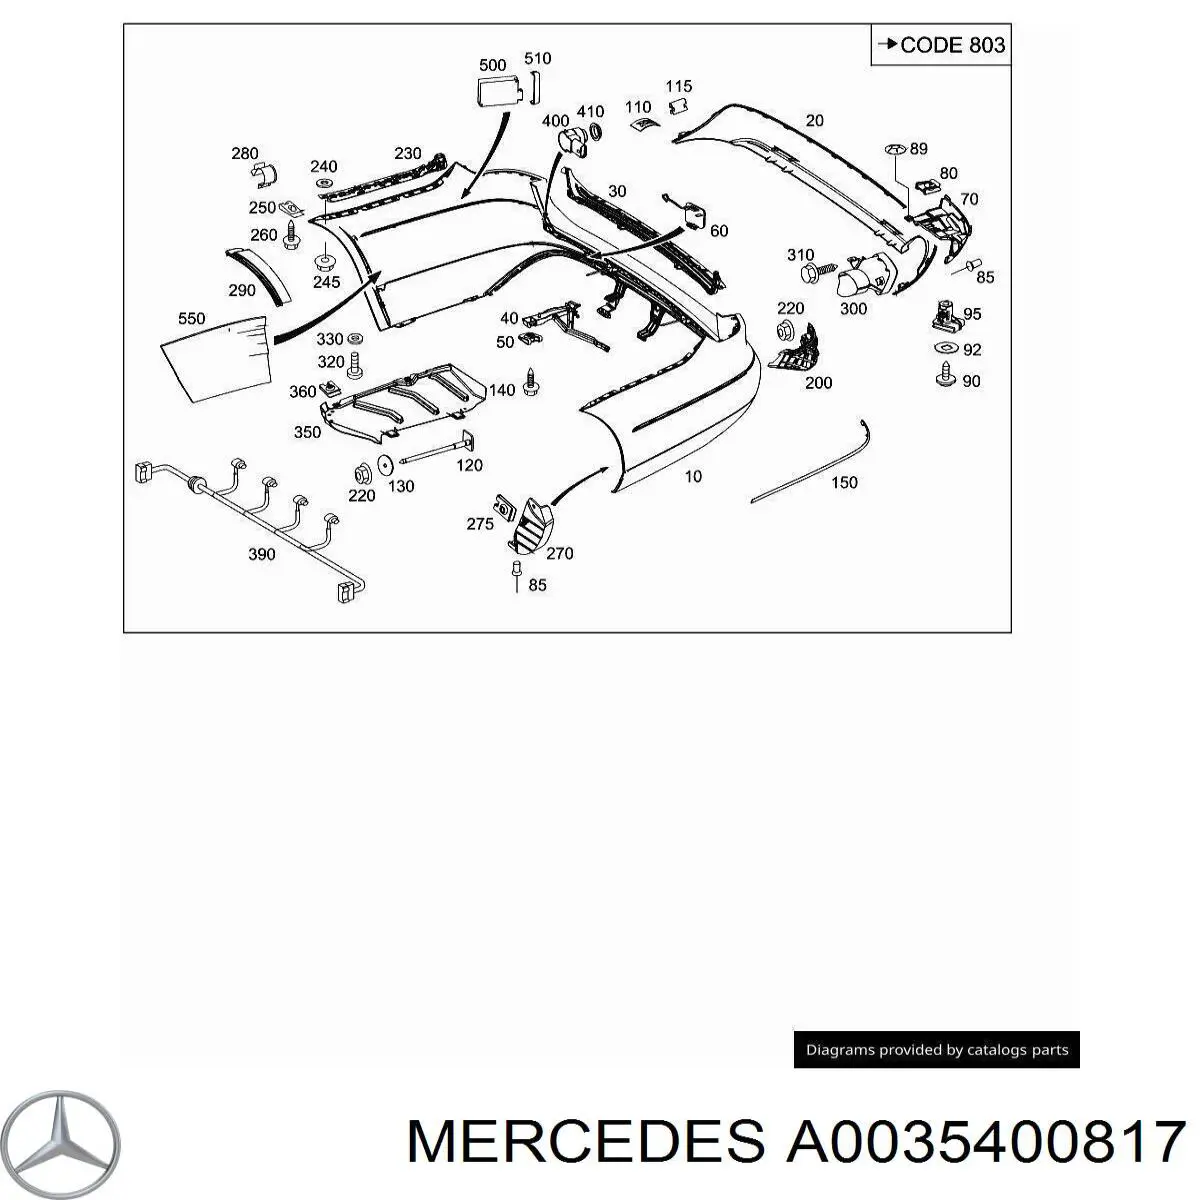 Sensor de control de ángulo muerto trasero para Mercedes ML/GLE (W164)